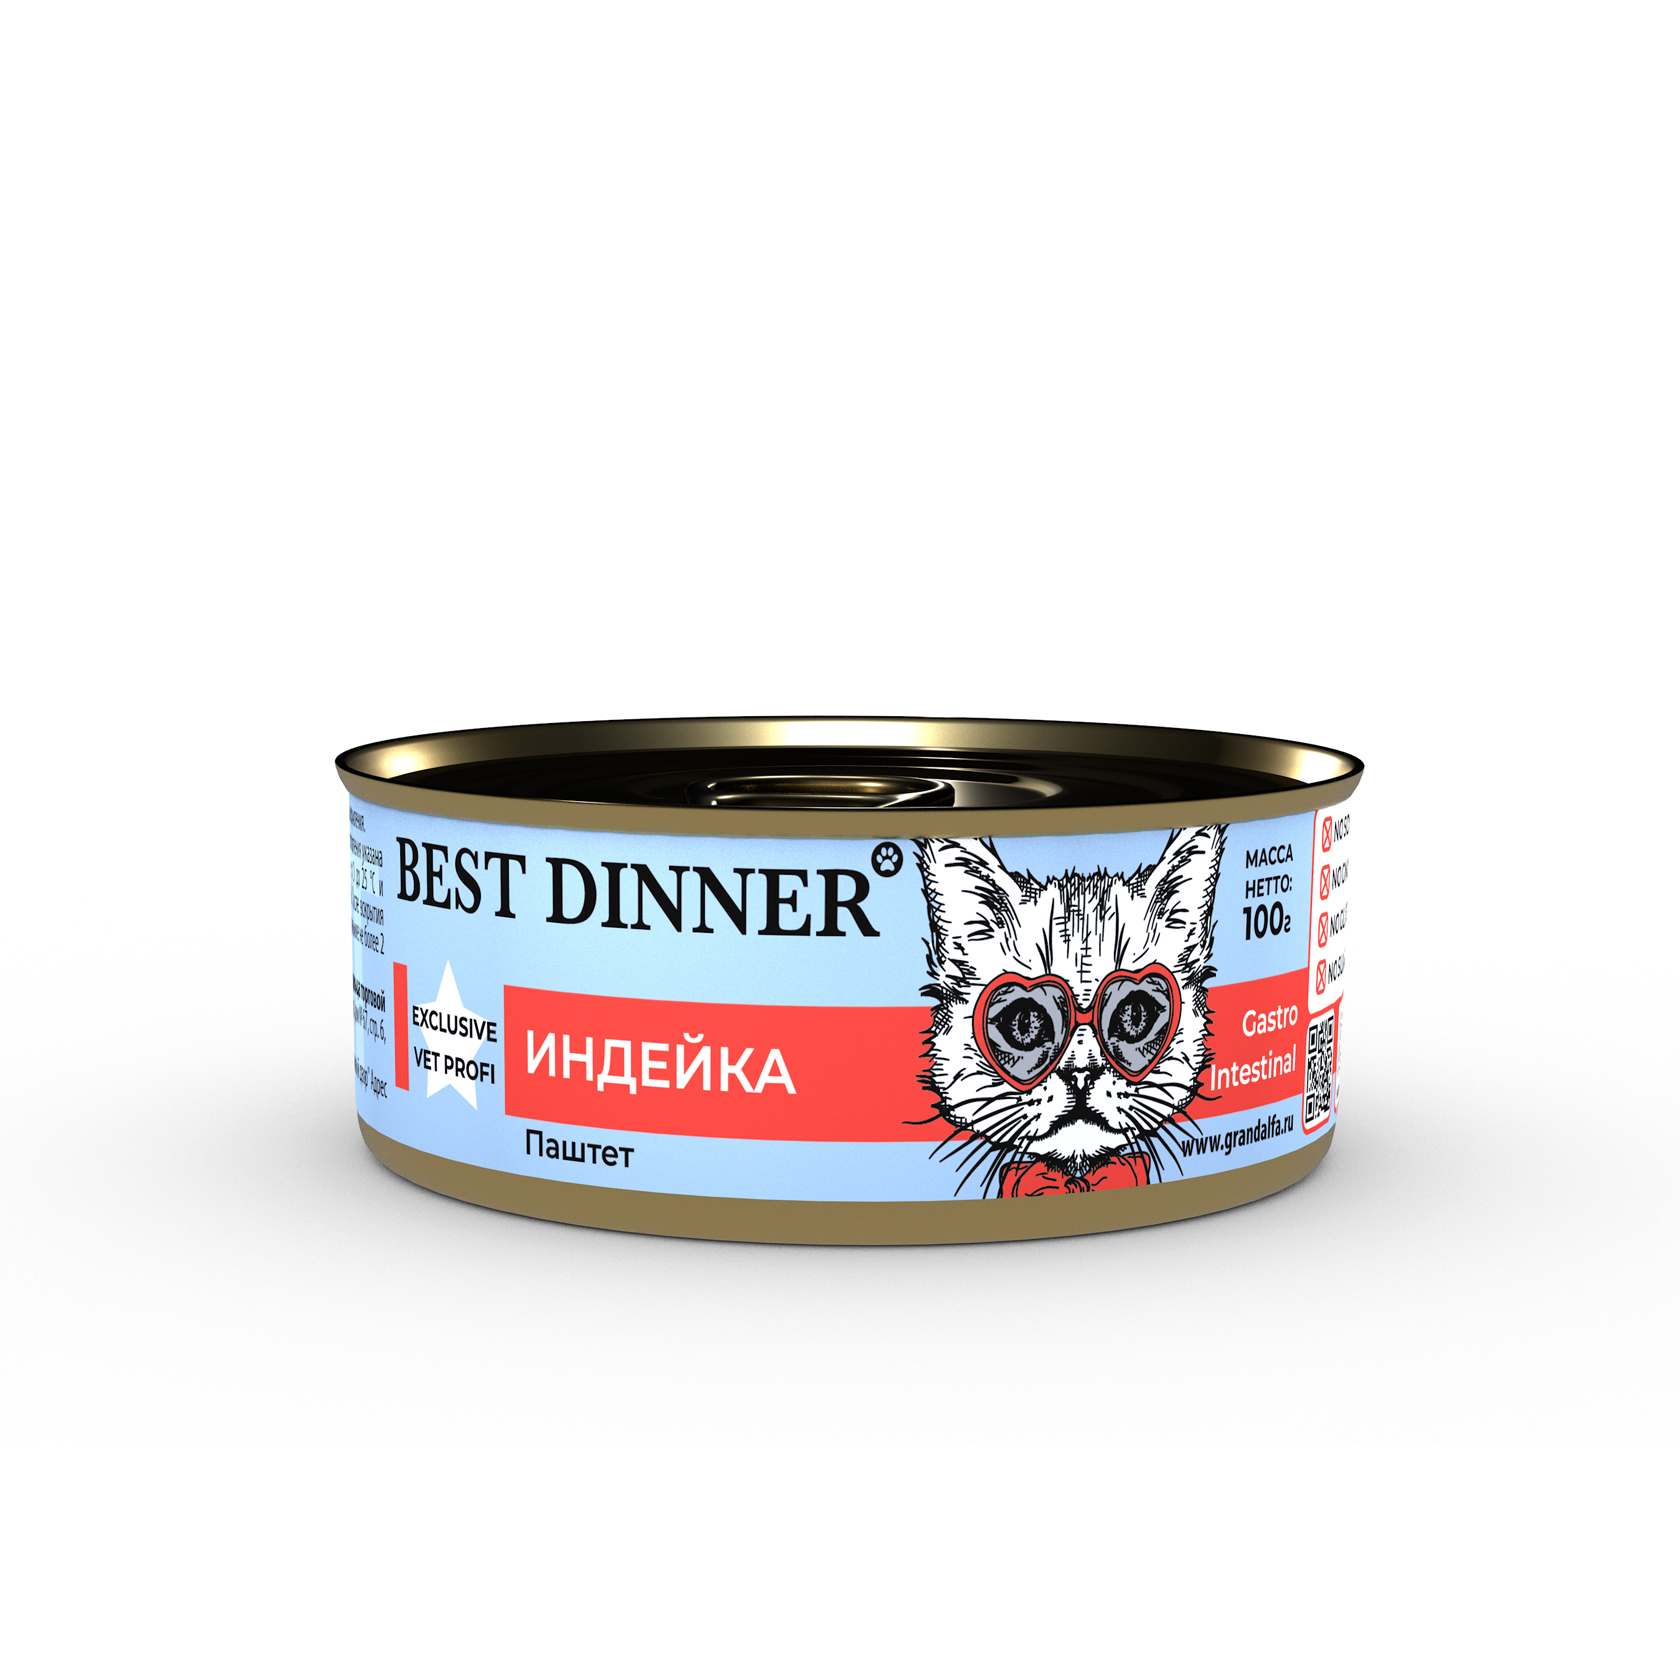 консервы для кошек "best dinner gastro intestinal exclusive vetprofi" (бест диннер гастроинтестинал) с индейкой